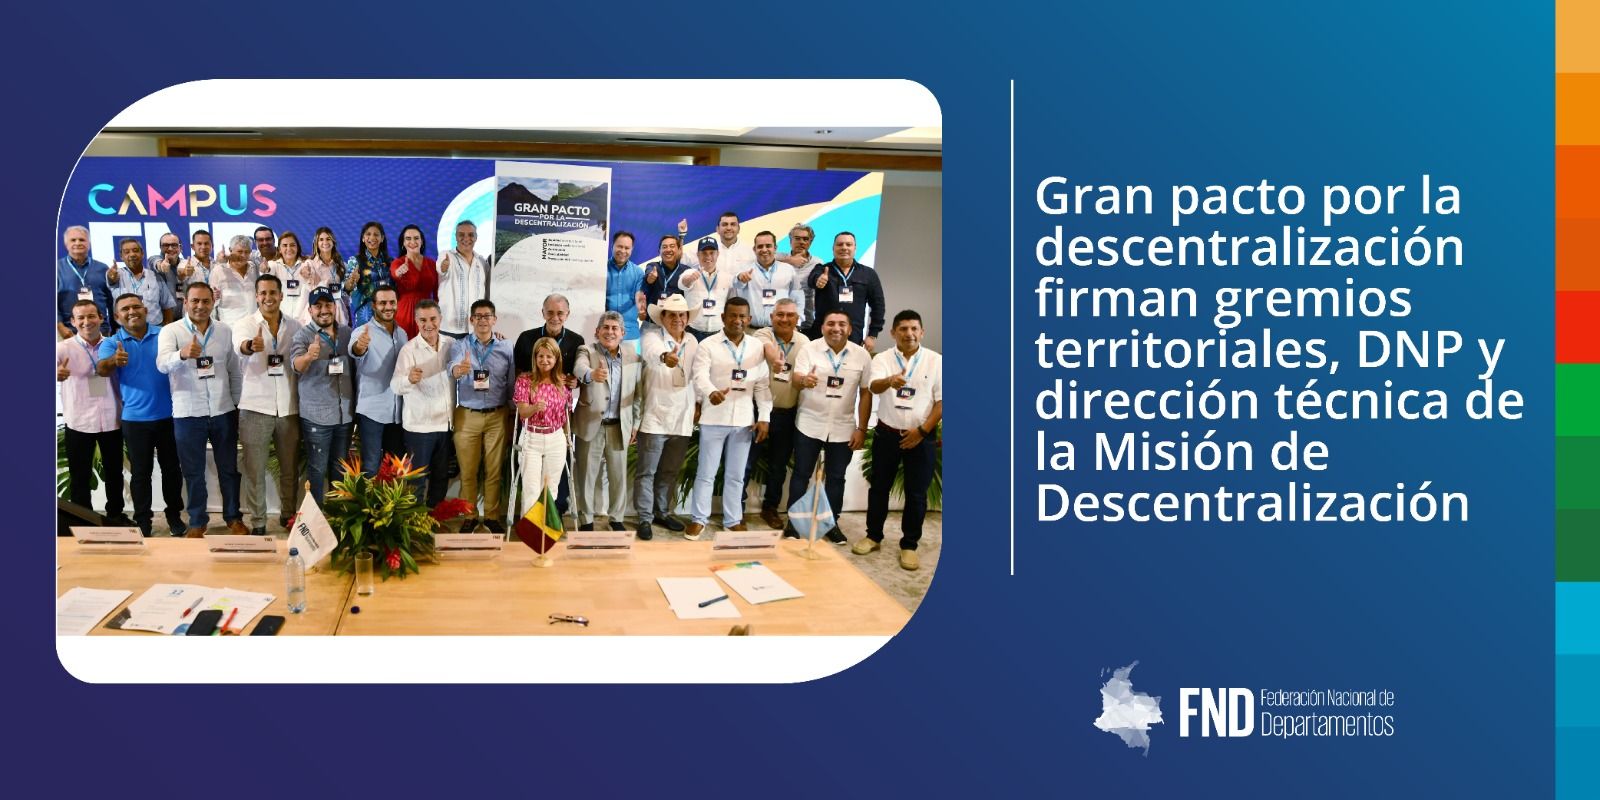 Gran pacto por la descentralización firman gremios territoriales, DNP y dirección técnica de la Misión de Descentralización